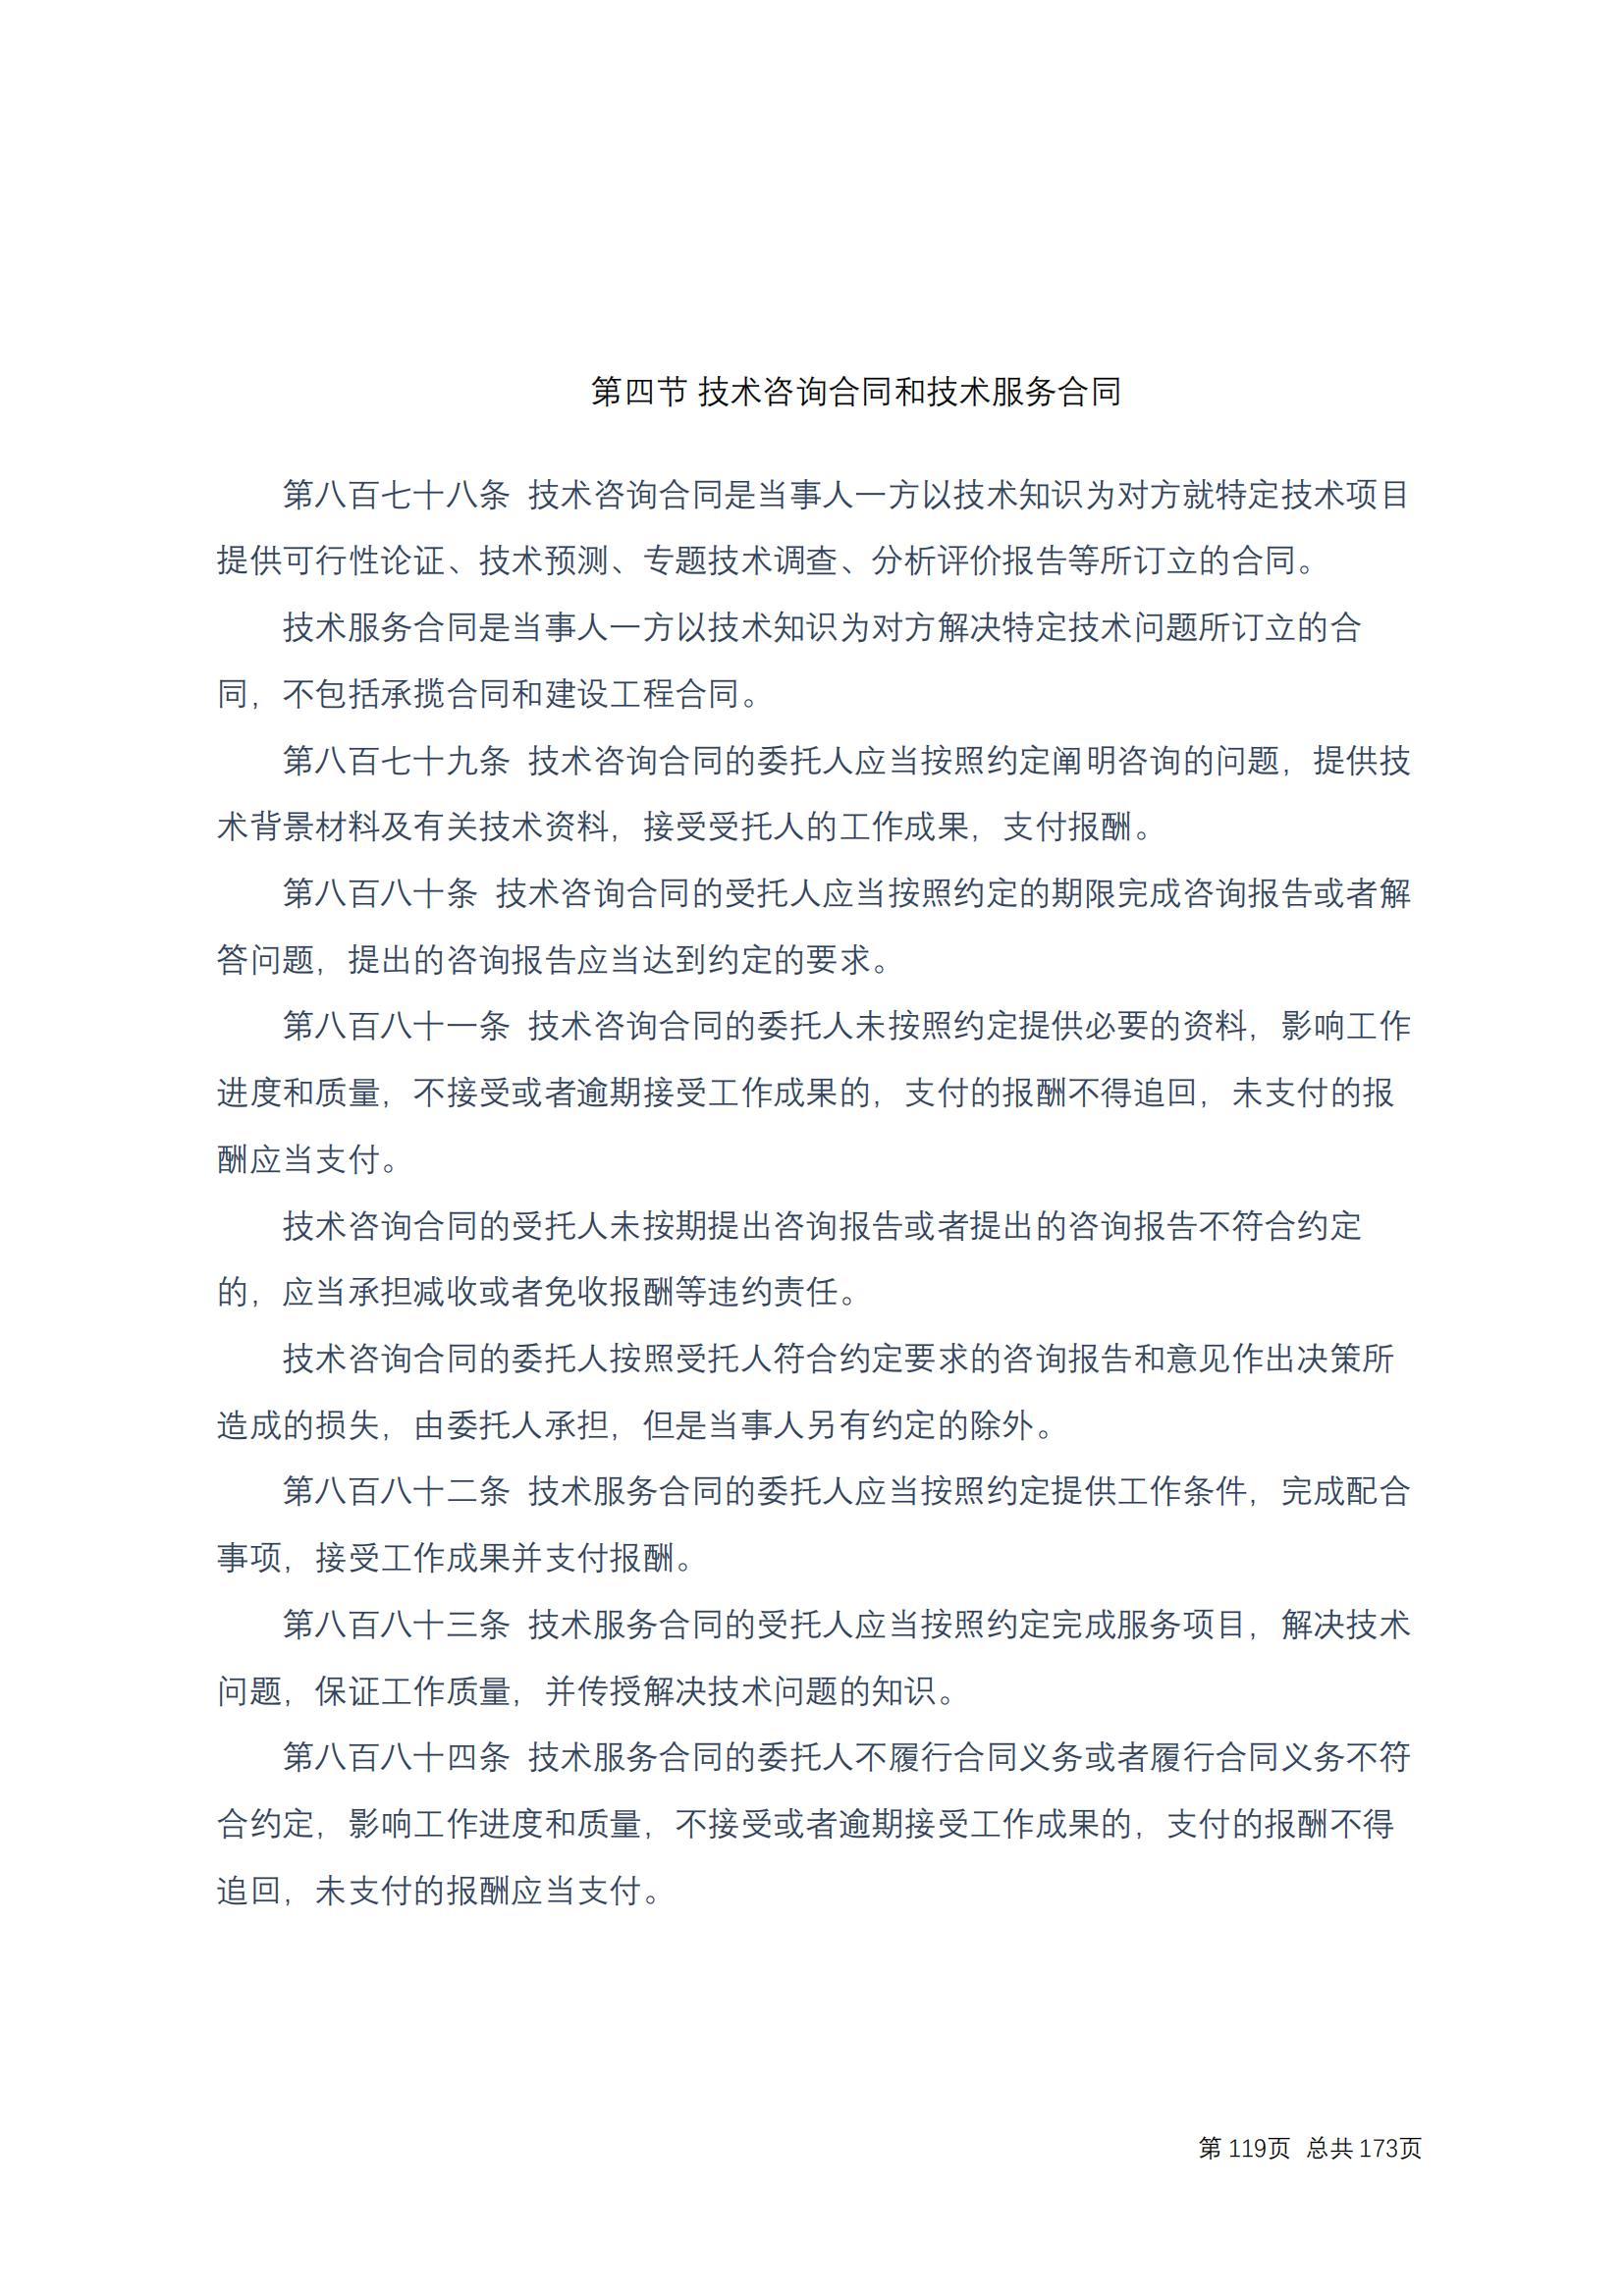 中华人民共和国民法典 修改过_118